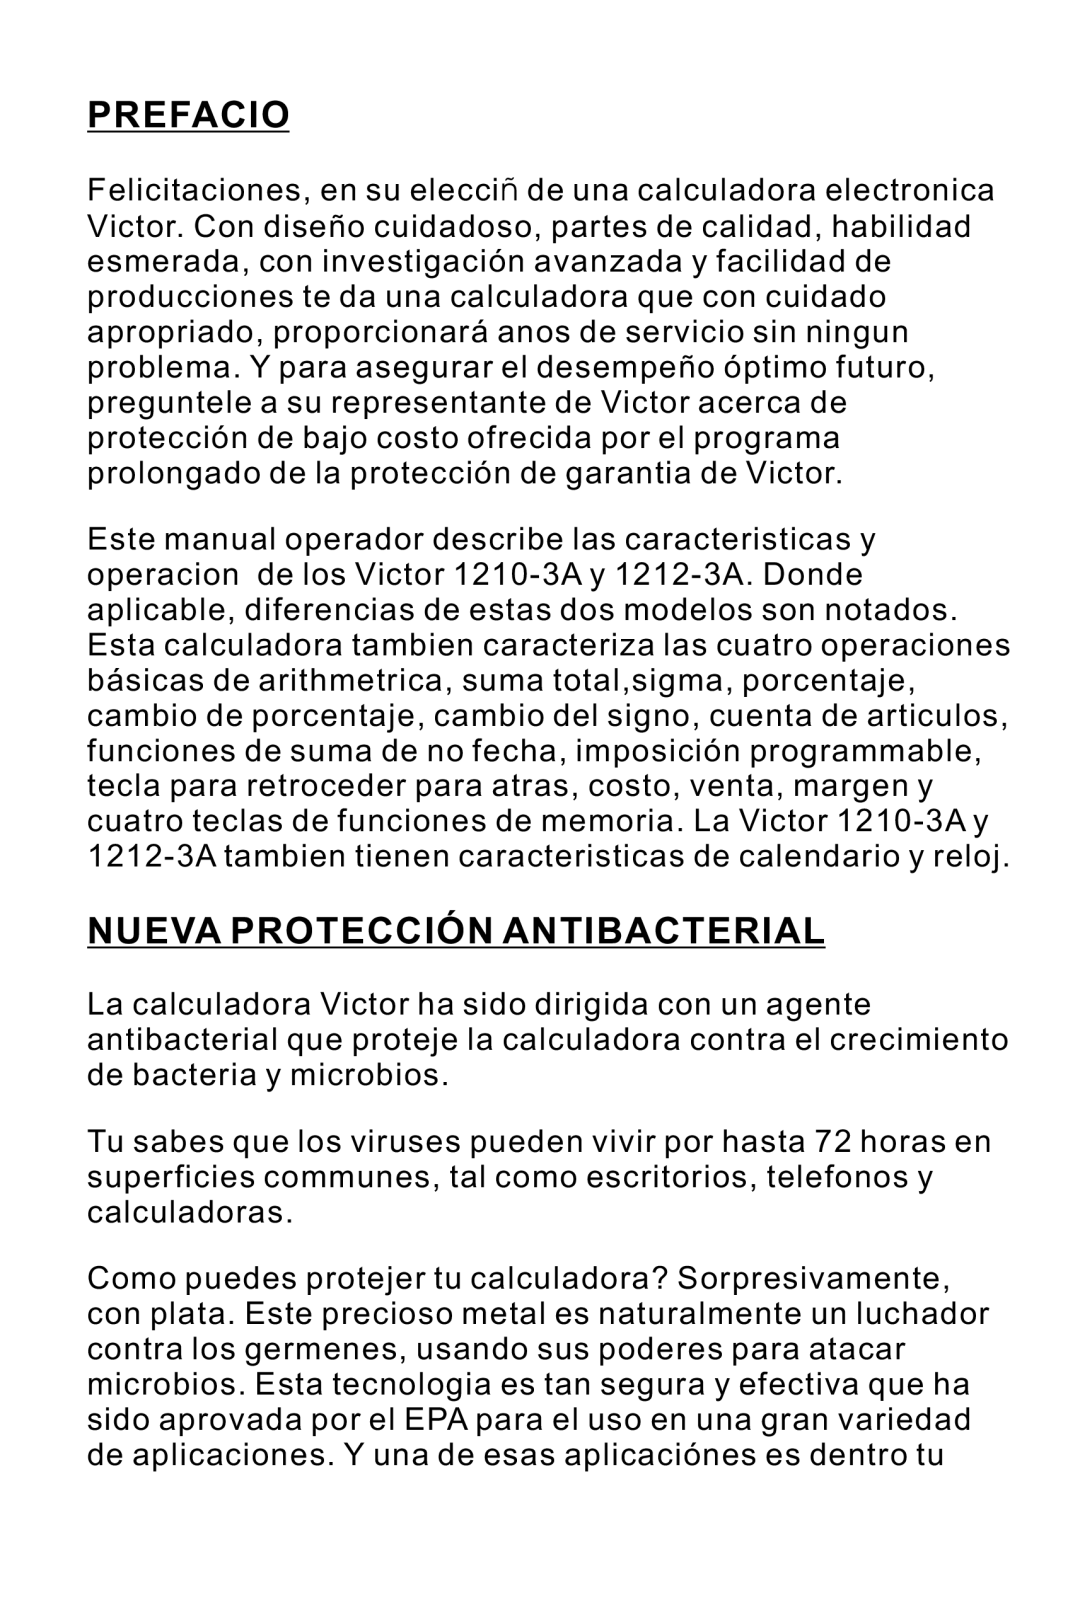 Victor 1212-3A instruction manual Prefacio, Nueva Protección Antibacterial 